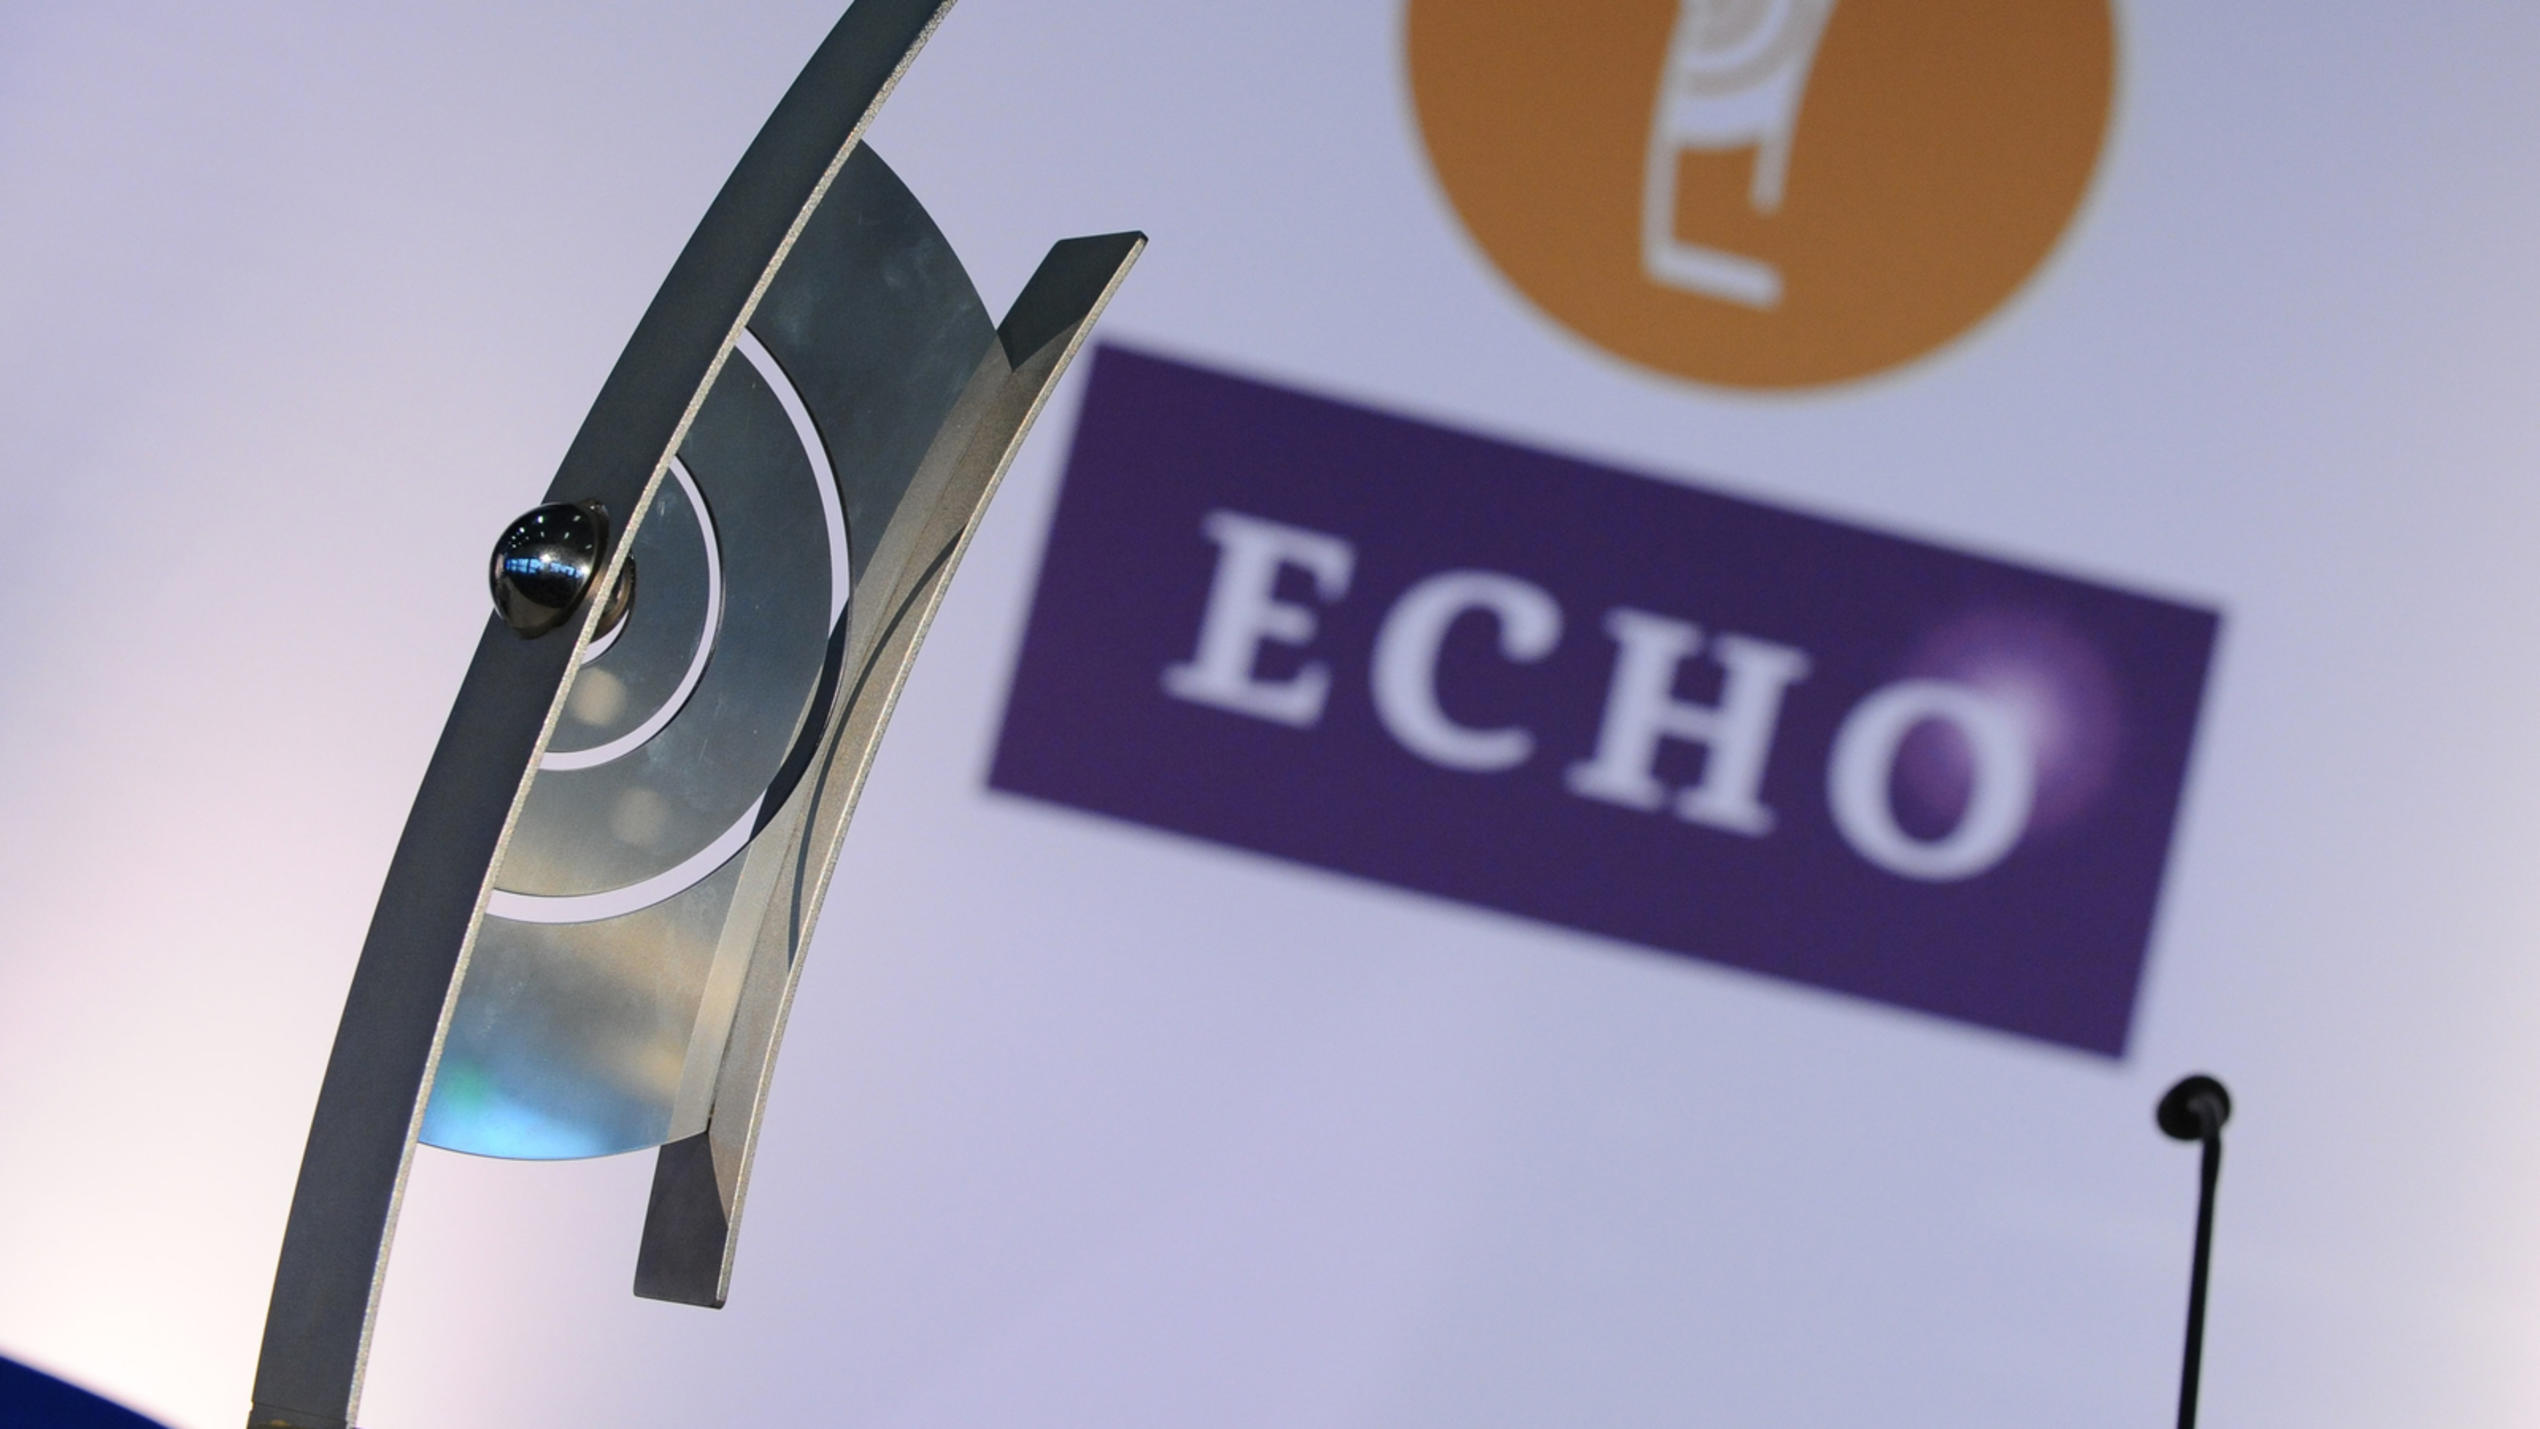 Das Logo des Musikpreises ECHO und der Preis selbst.